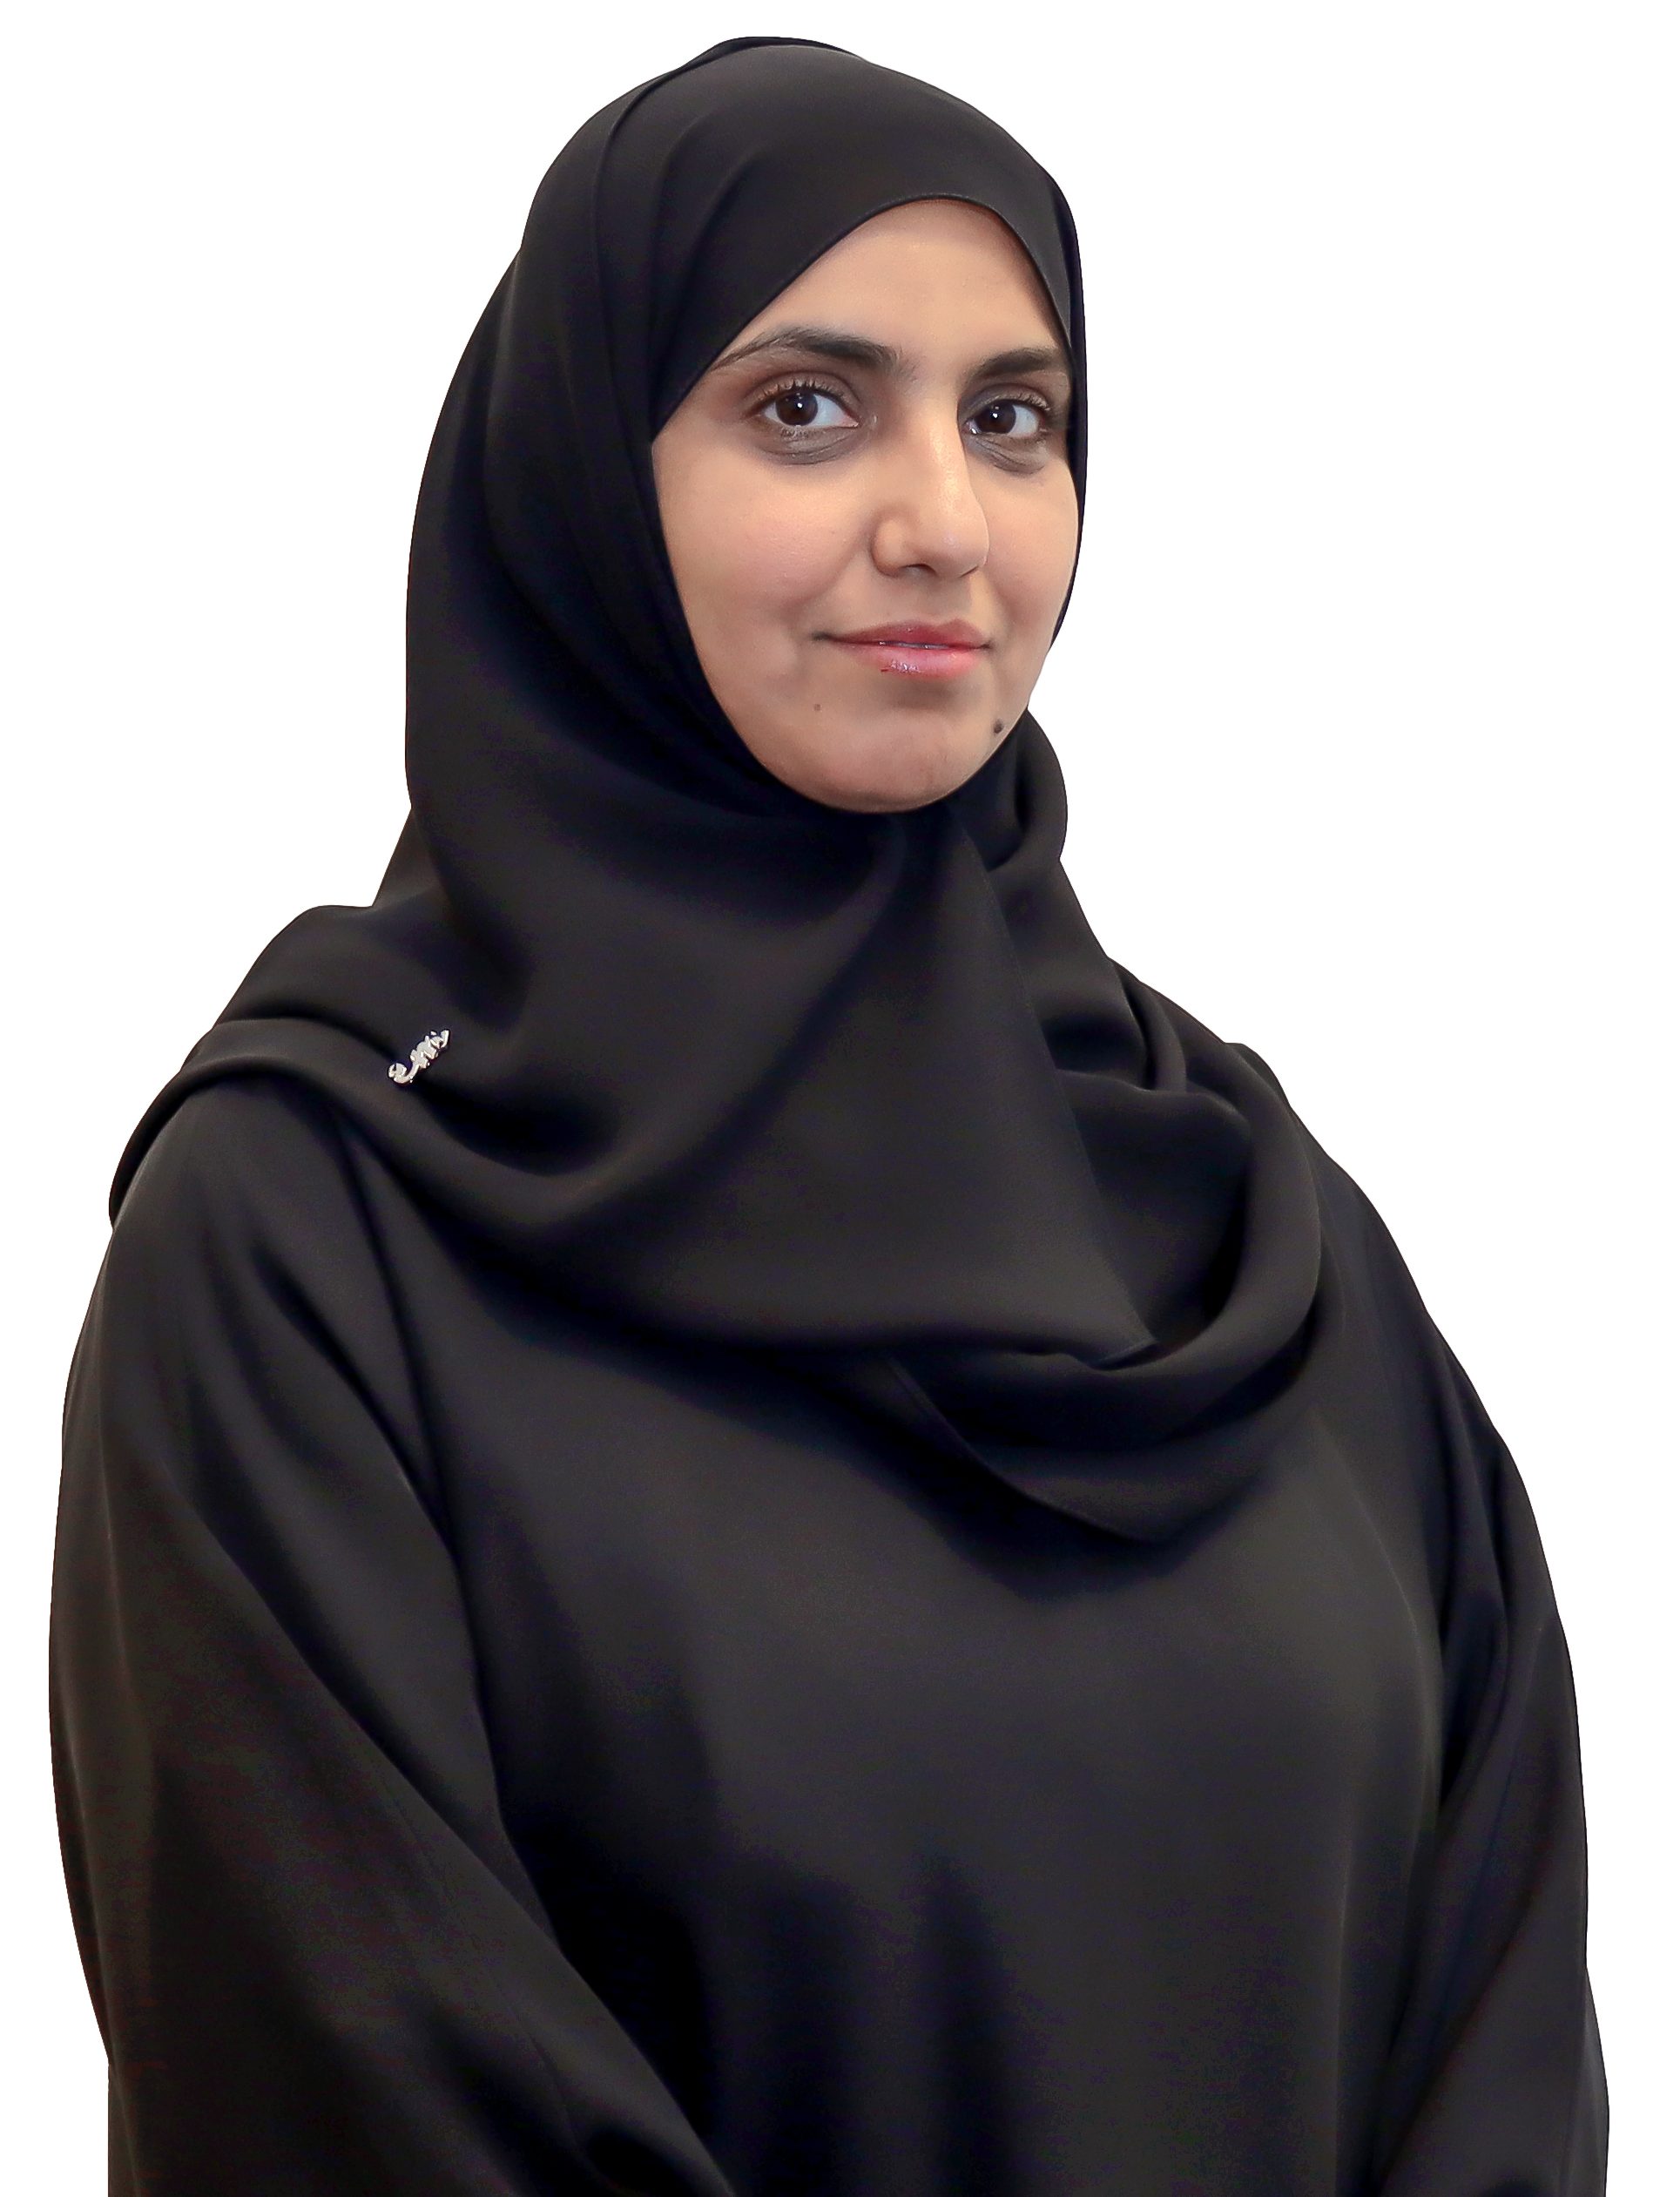 Dr. Noora Almenhali